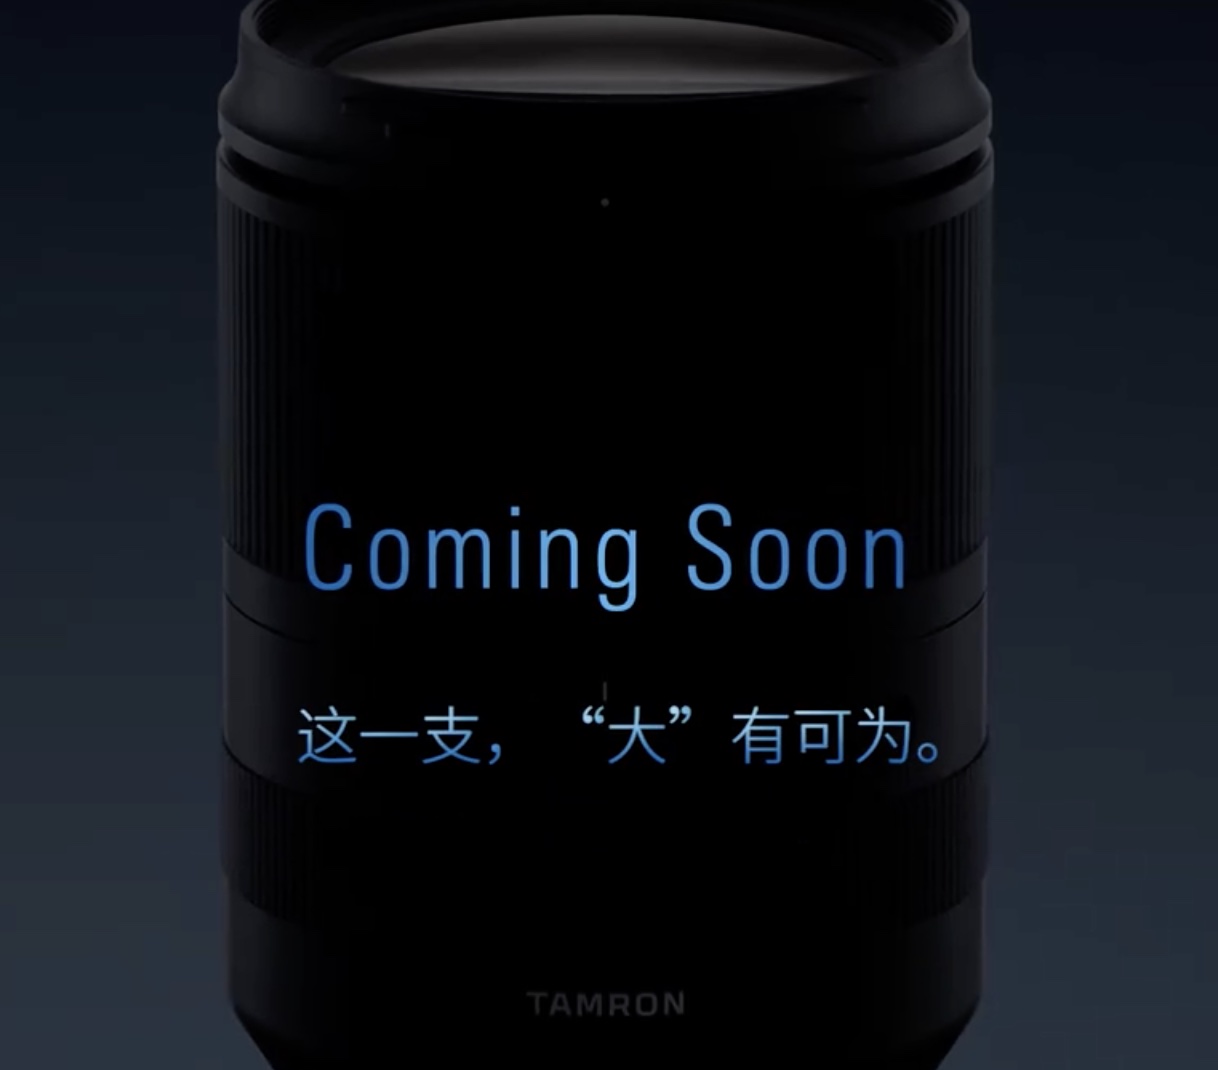 Tamron sắp sửa ra mắt ống kính mới dành cho máy ảnh Sony ngàm E